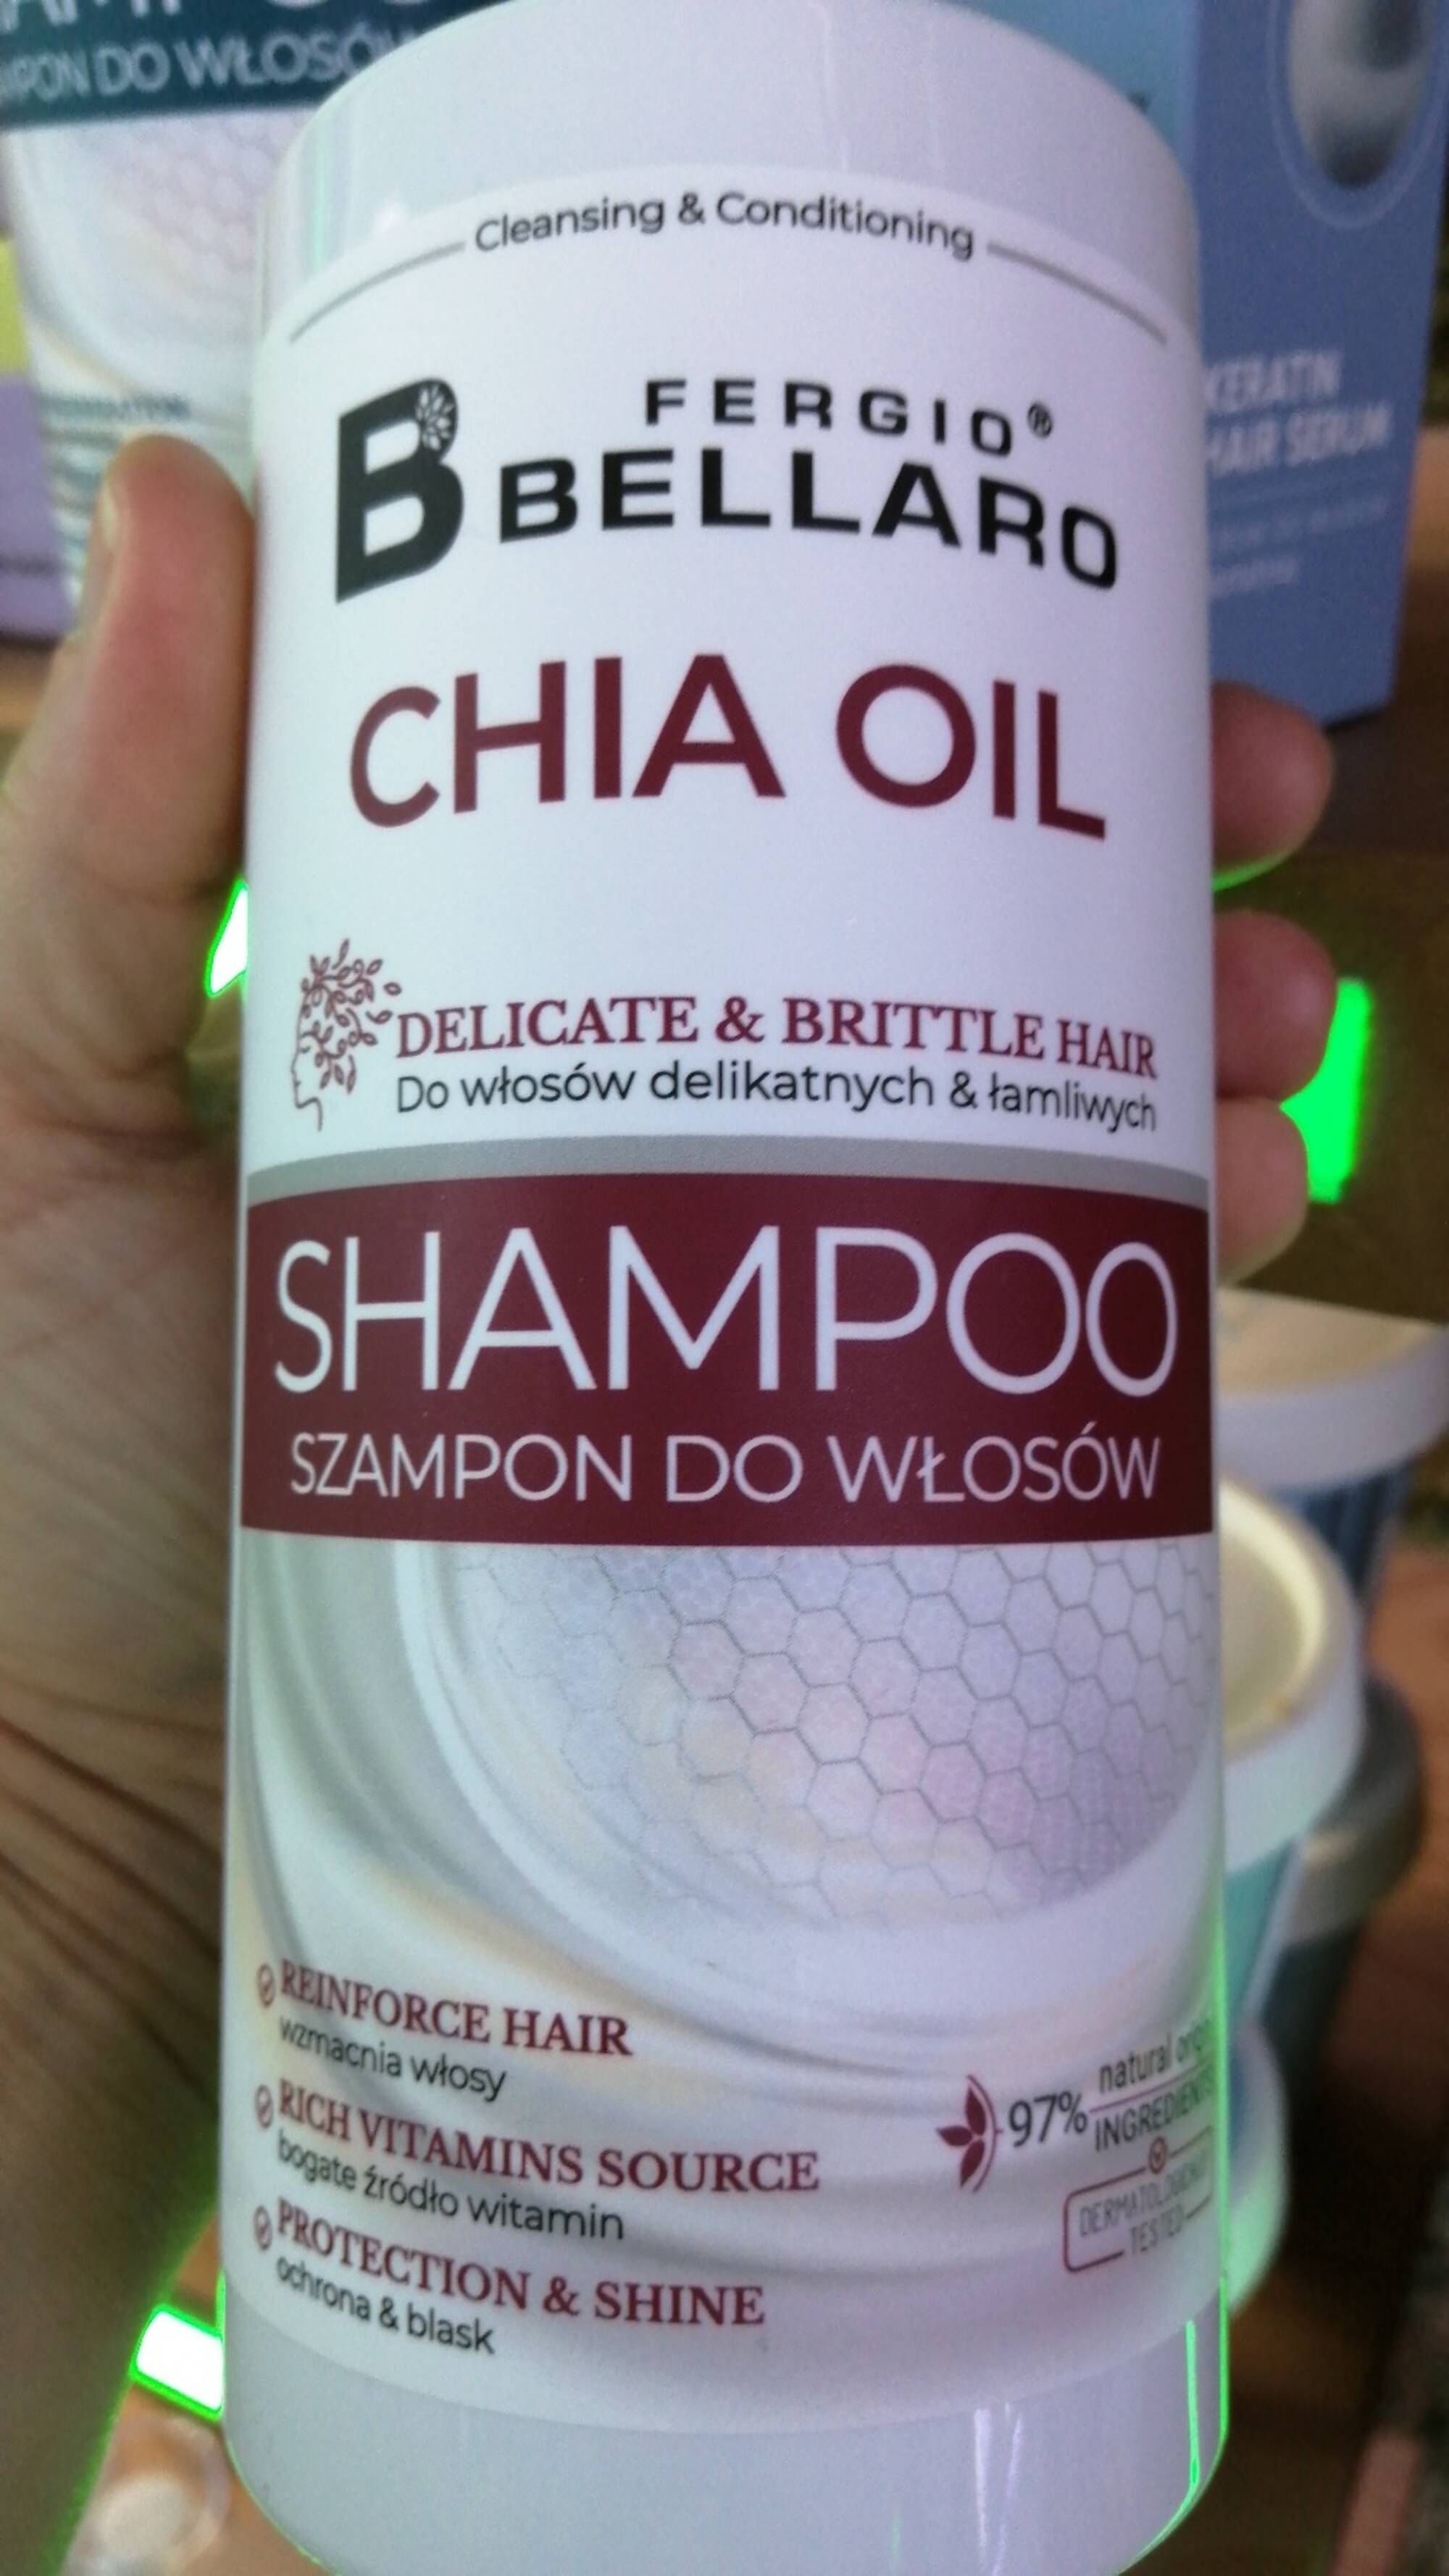 FERGIO BELLARO - Chia oil - shampoo